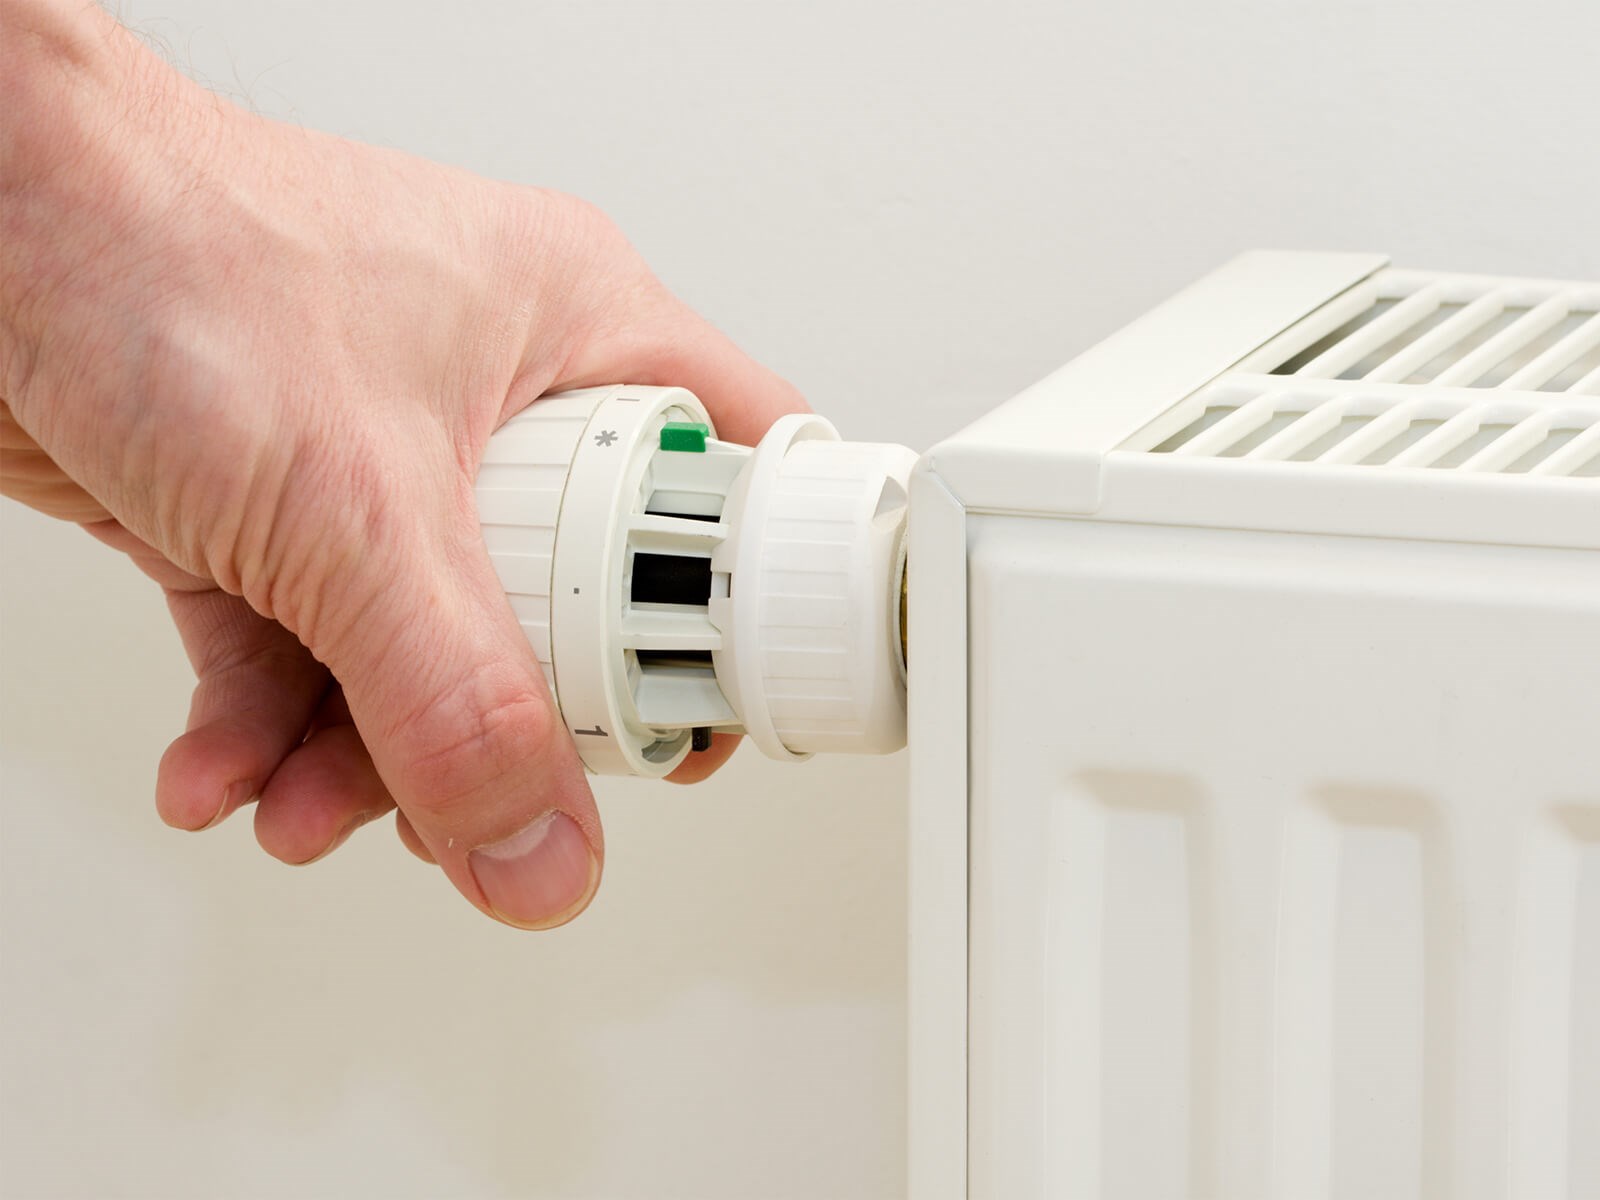 Hånd drejer på radiator. Skru ned for radiator ved udluftning i hjemmet. Hvor længe skal man lufte ud? Gør det af 5-10 minutters varighed.